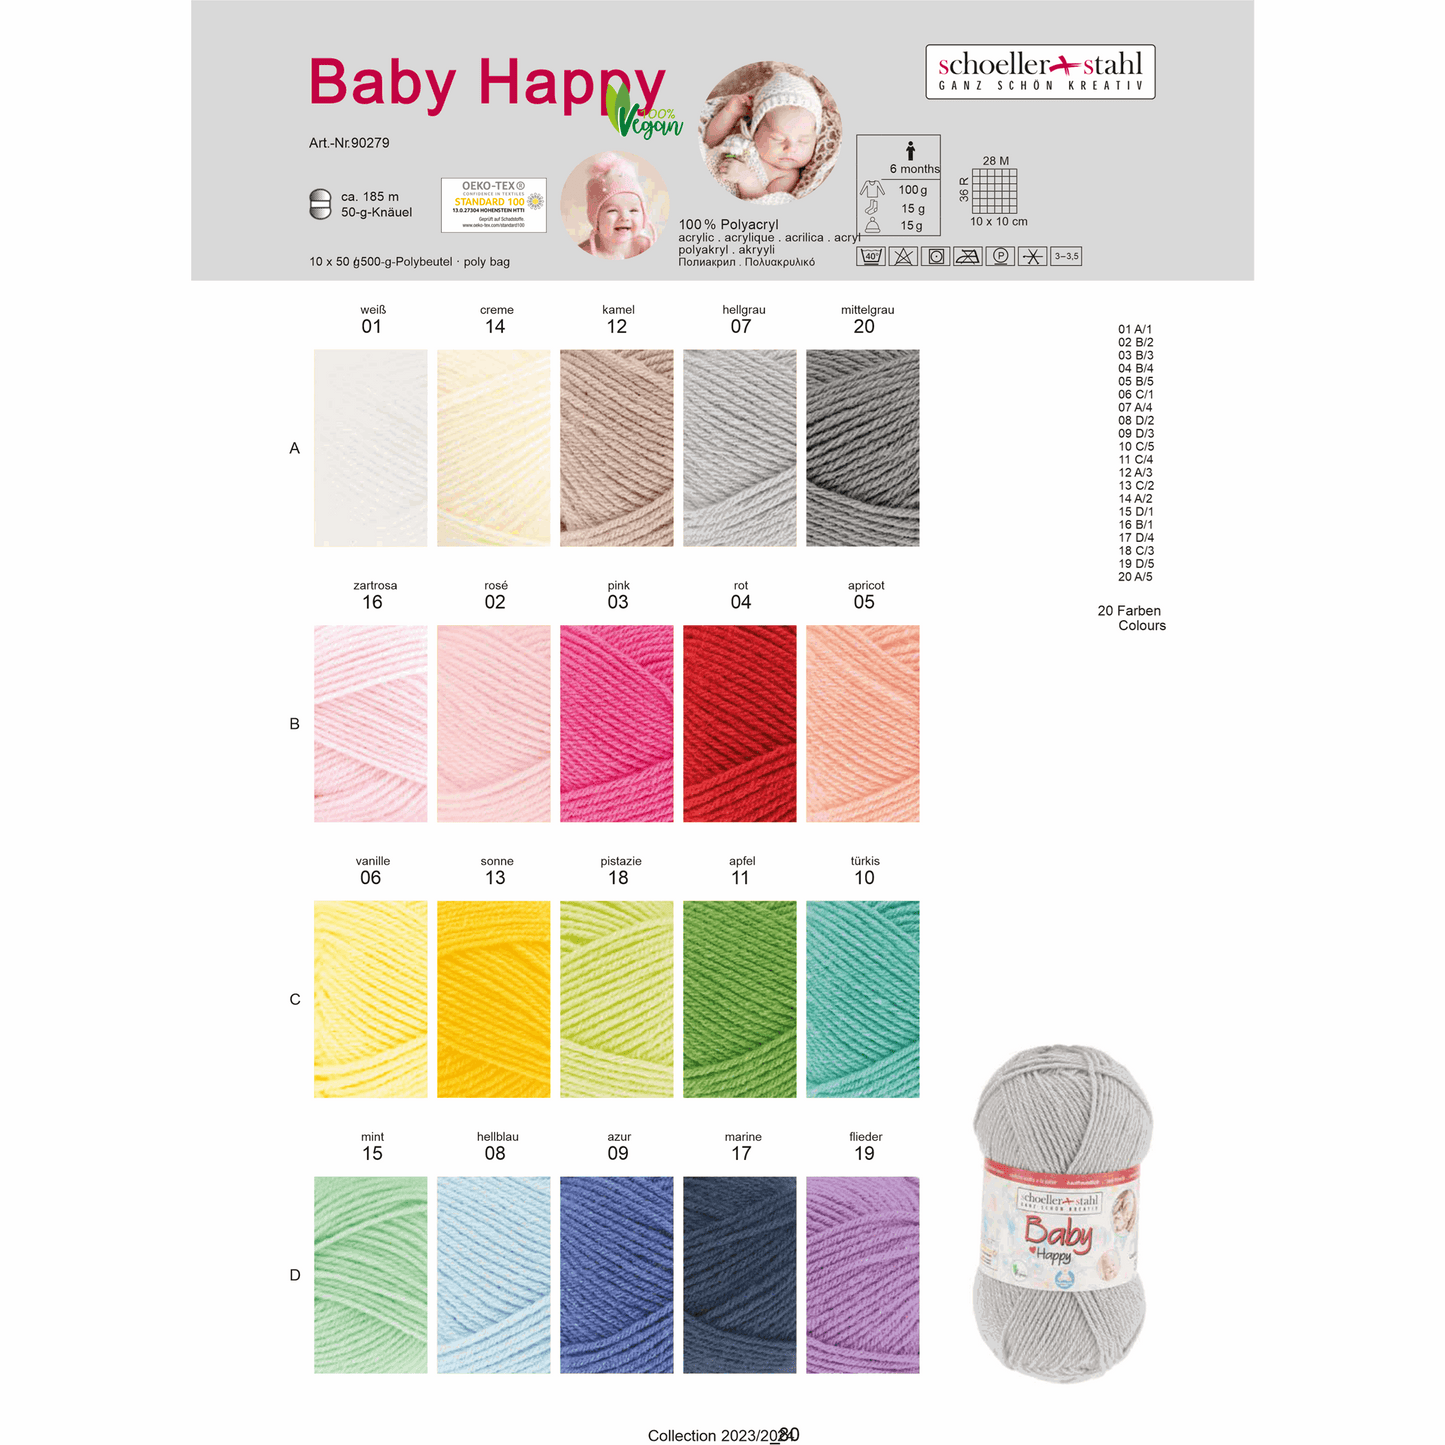 Baby happy 50g, 90279, color 6, vanilla